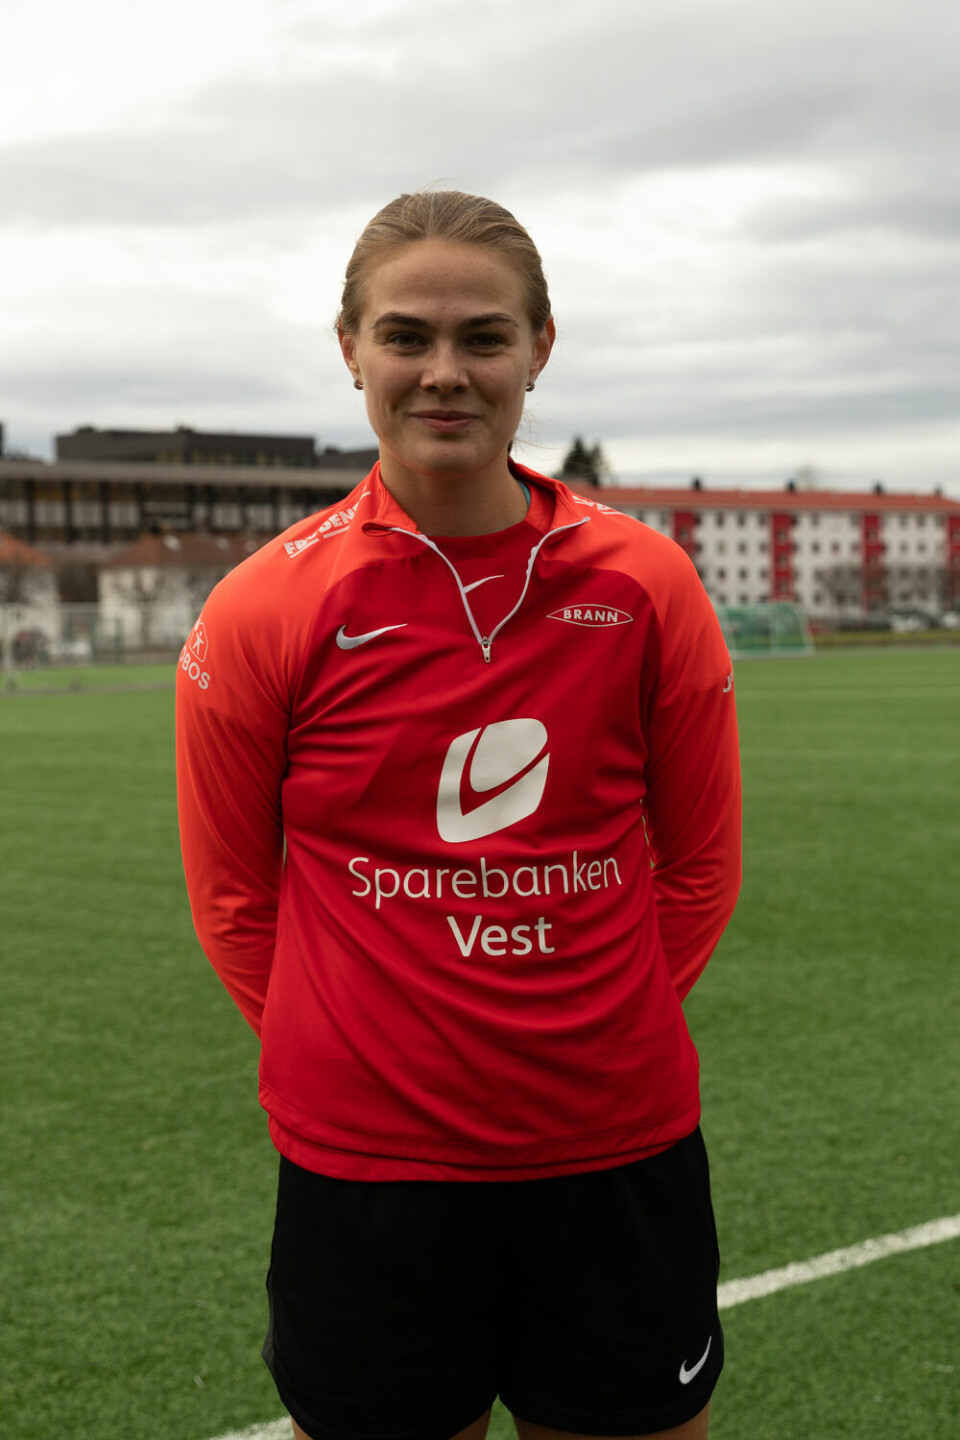 BEDRE PRESTASJONER. Marthine Østenstad mener at kombinasjonen toppfotball og studier kan bidra til at hun presterer bedre på begge arenaer.